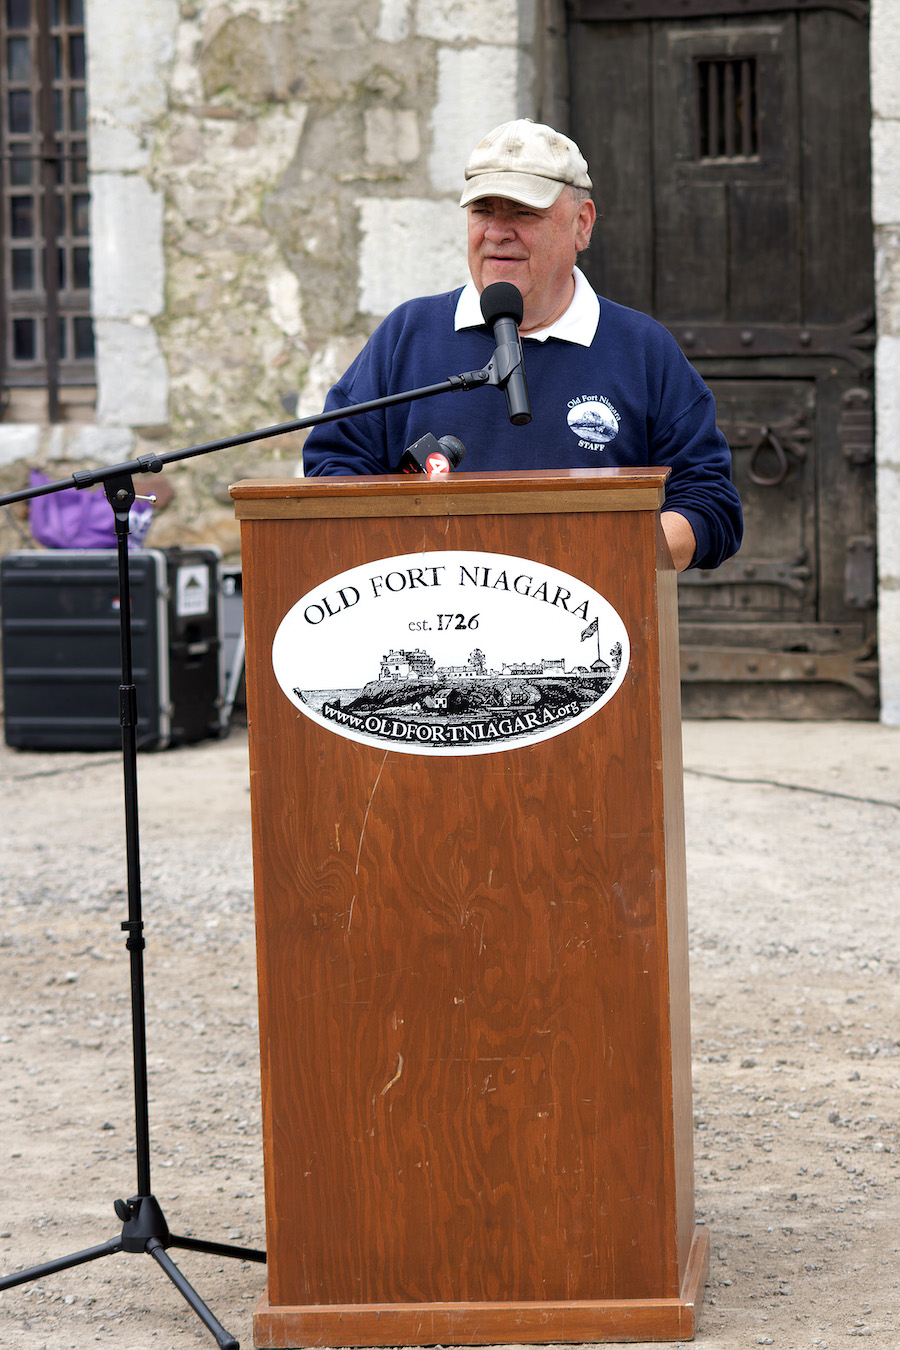 Old Fort Niagara And Niagara University Partner To Make Historic